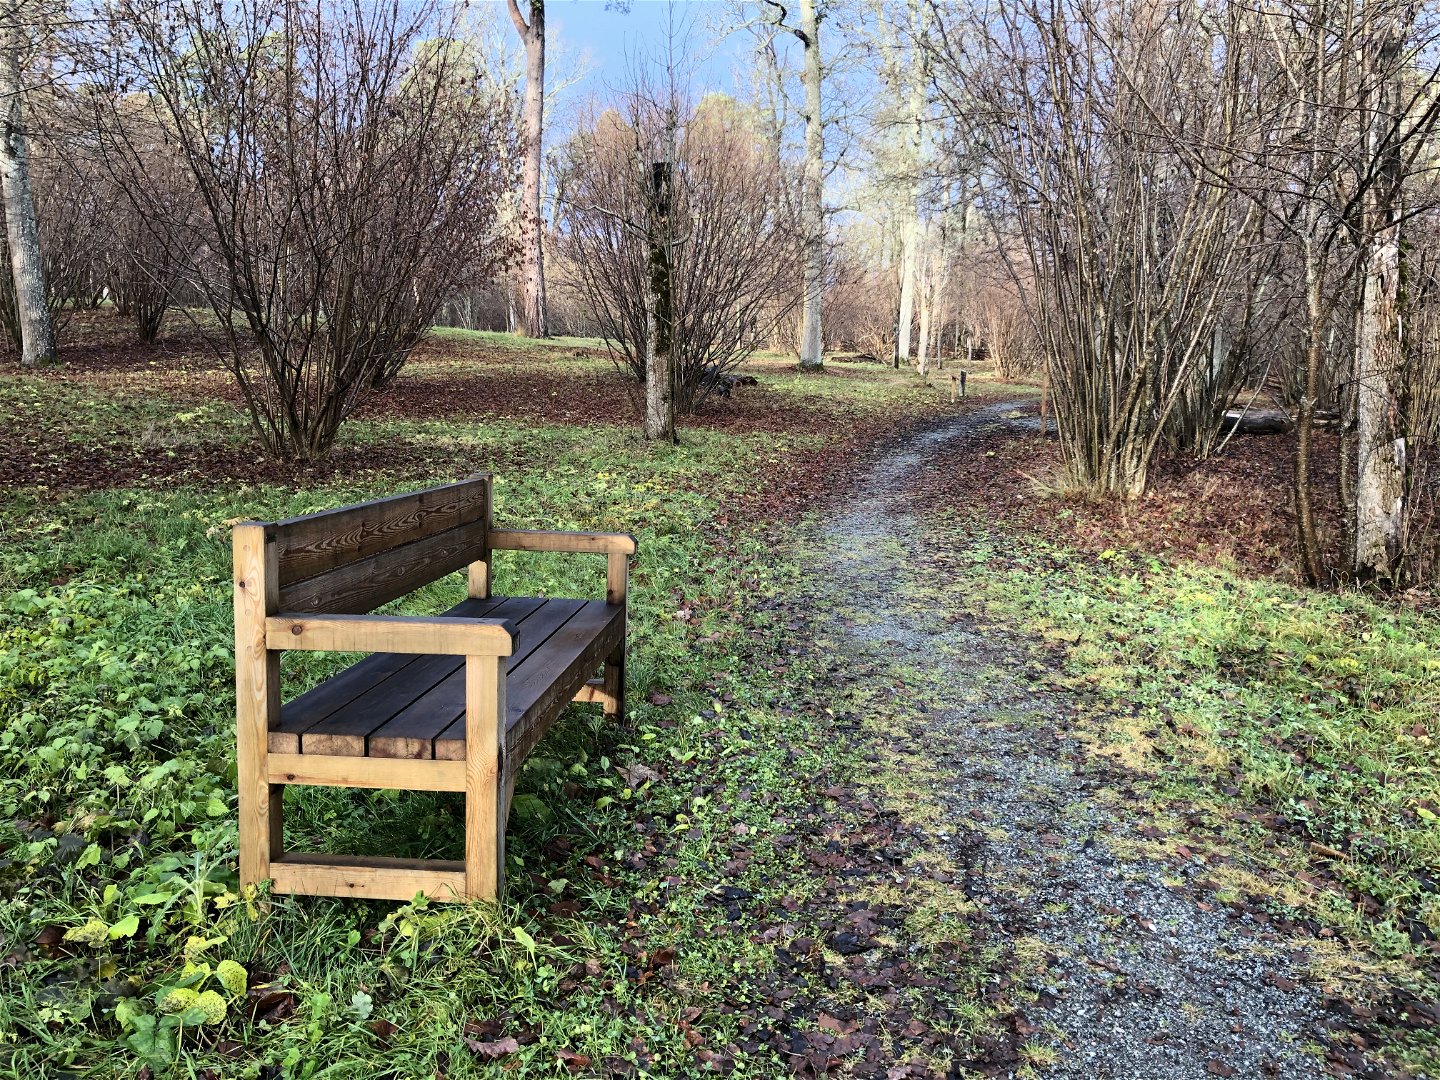 Vid en smal stig som går genom parken står en sittbänk.